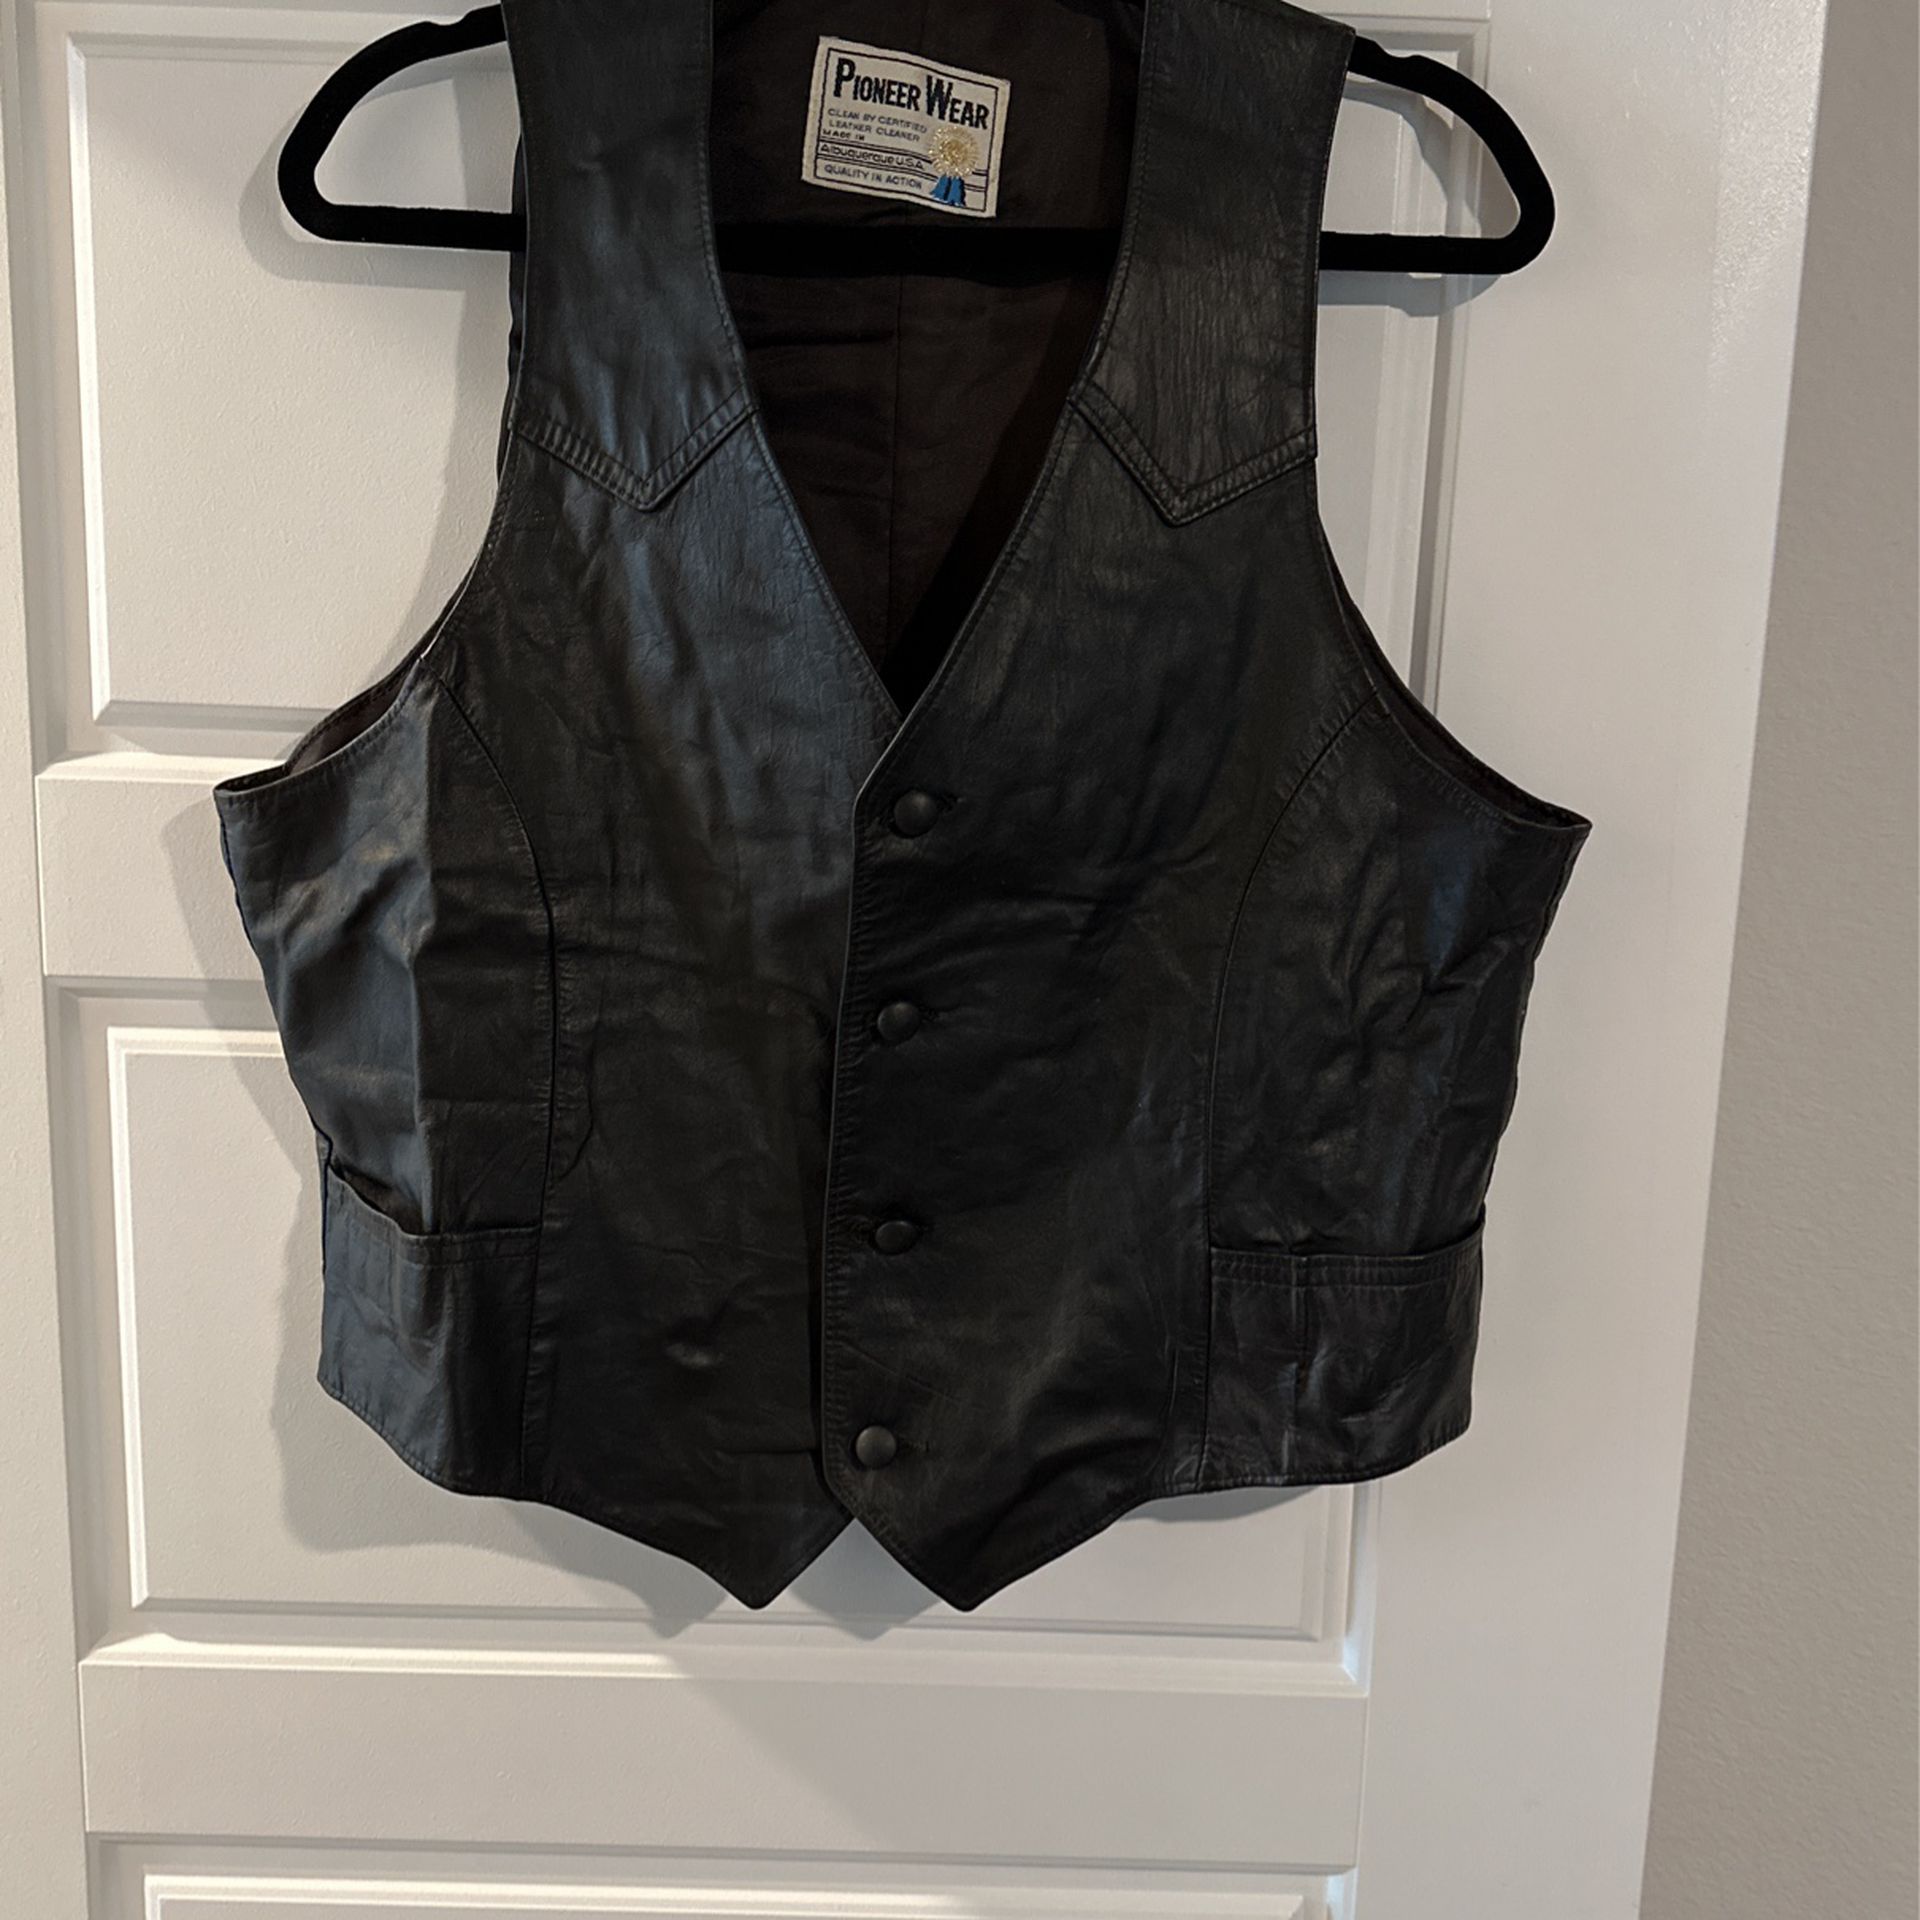 Vintage Black Leather Vest By: Pioneer Wear